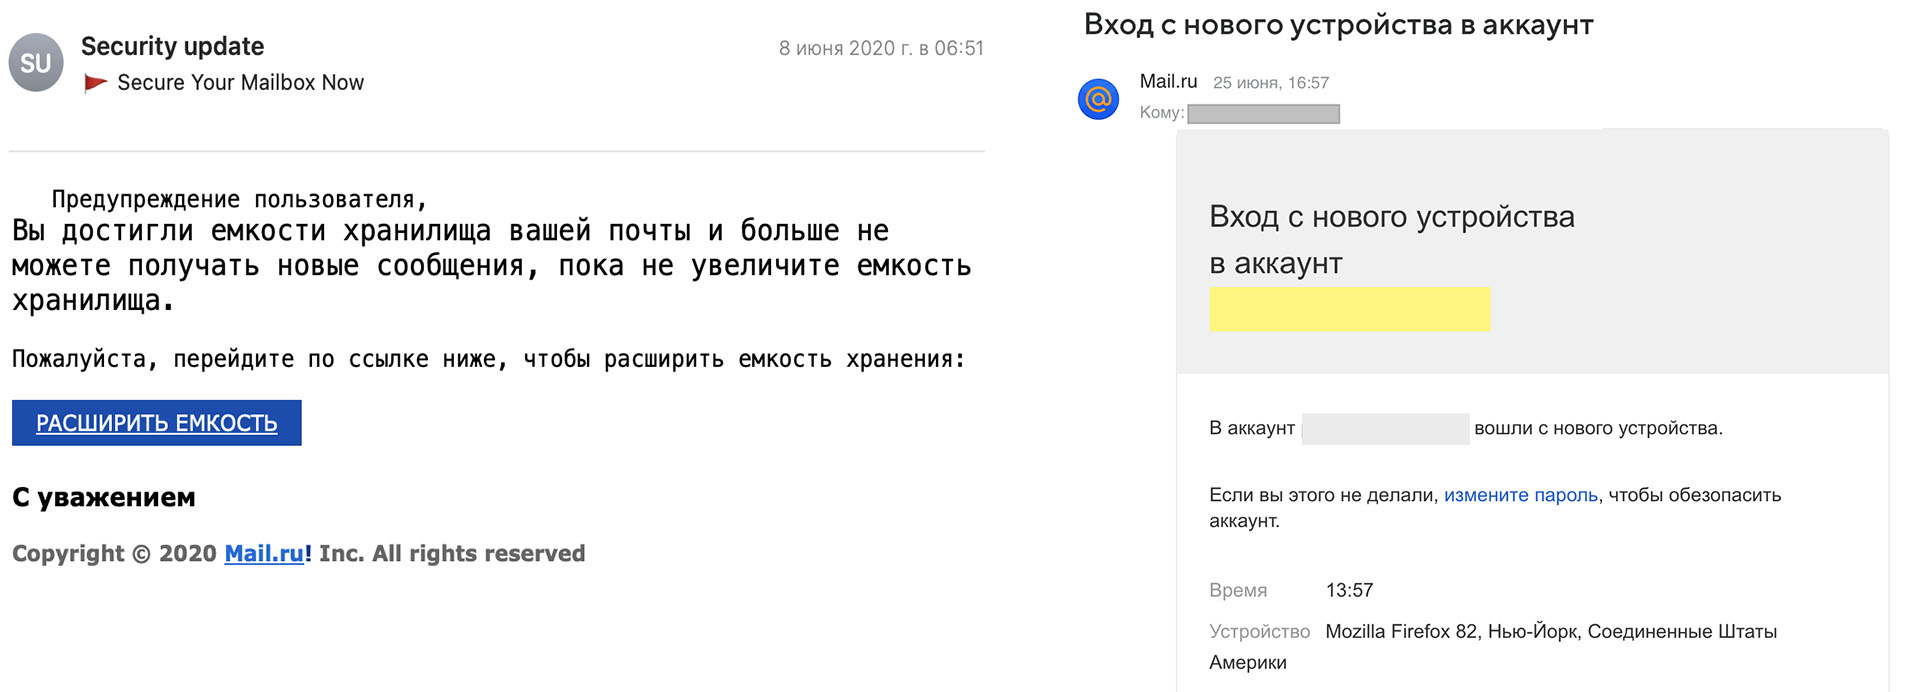 Слева — так выглядел фишинг под mail.ru три года назад. Справа — так он выглядит сейчас.